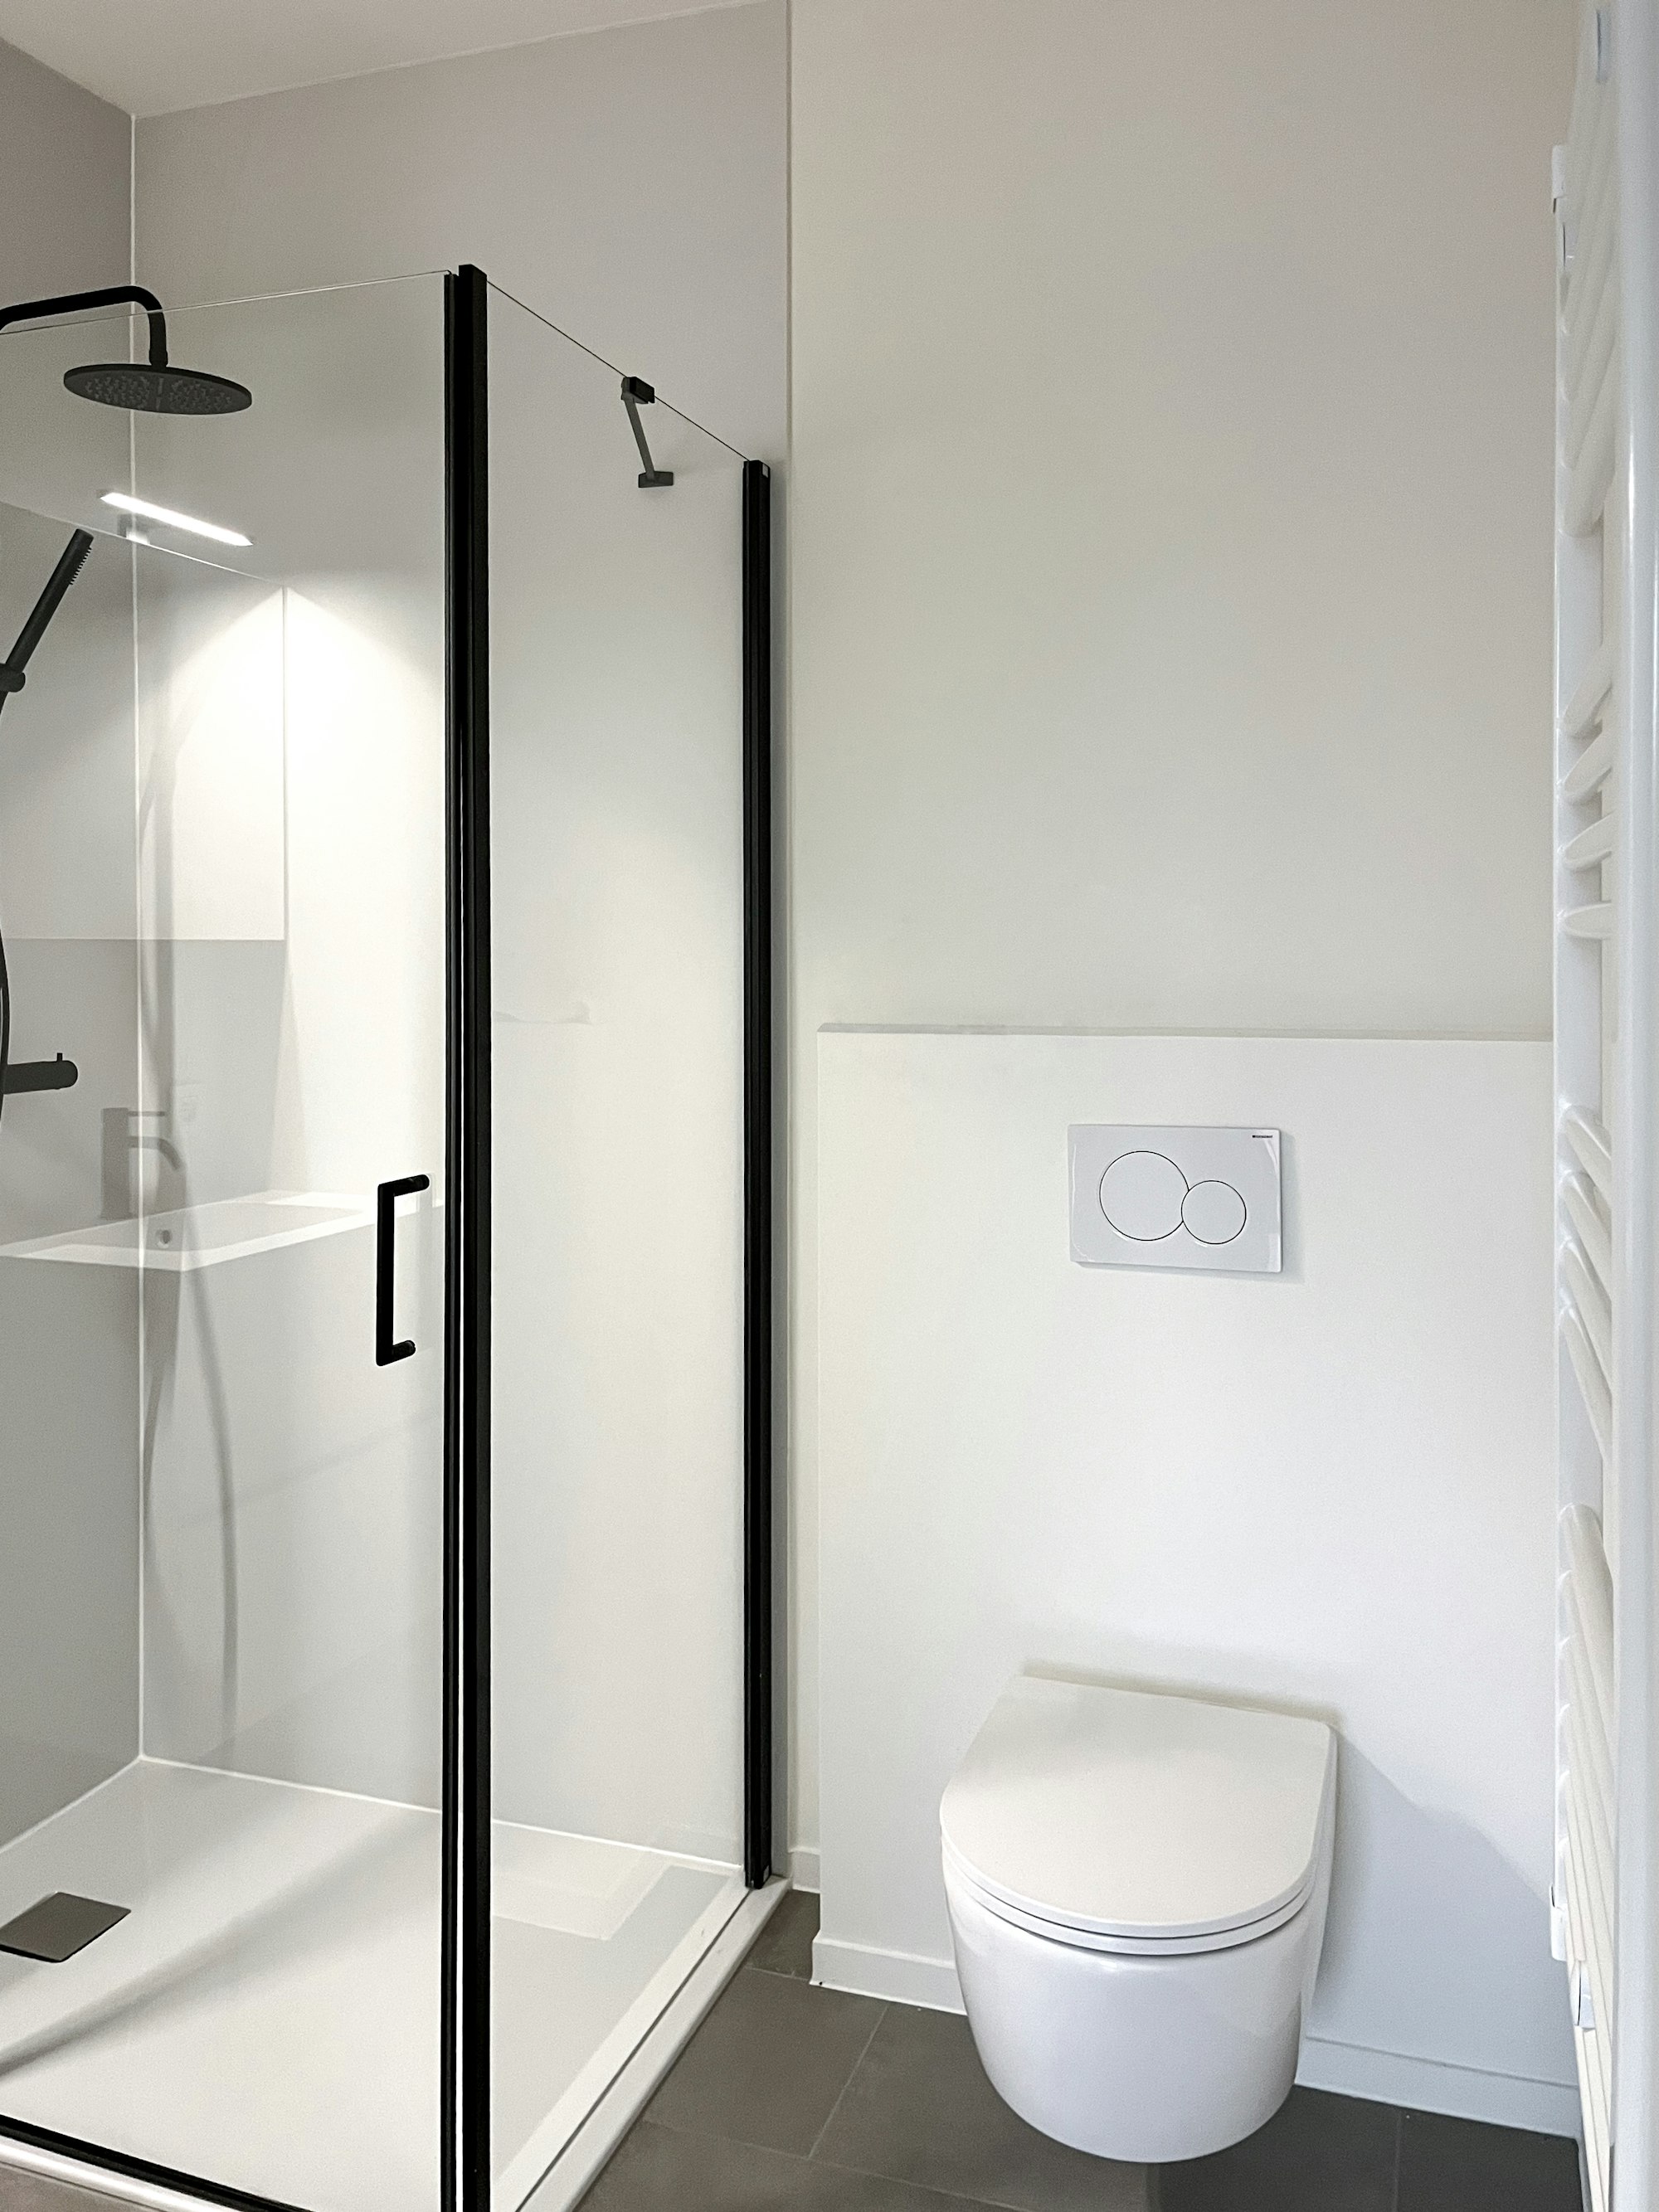 Badkamer bovenverdieping in de Skilpod #130 prefab houtskeletbouw woning, toilet en douche met matzwarte accenten